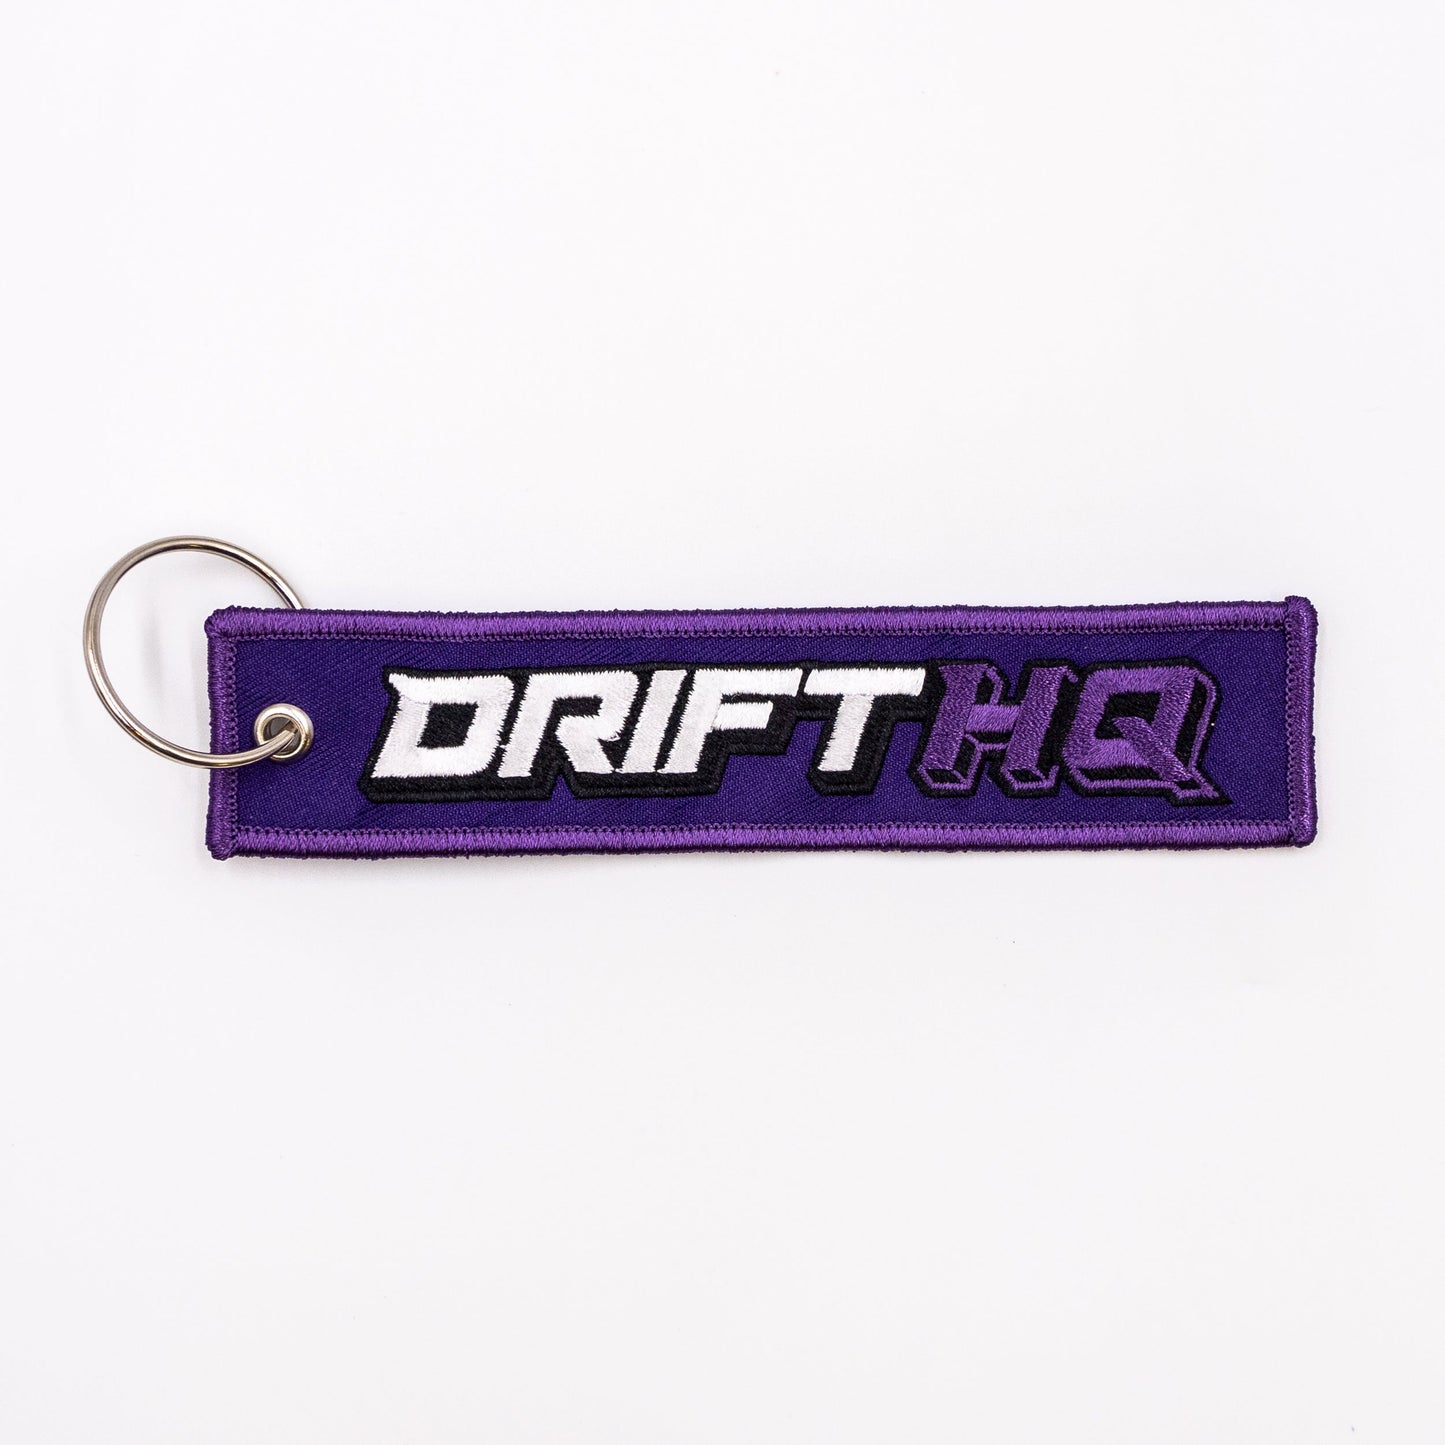 Drift HQ - Jet Tag